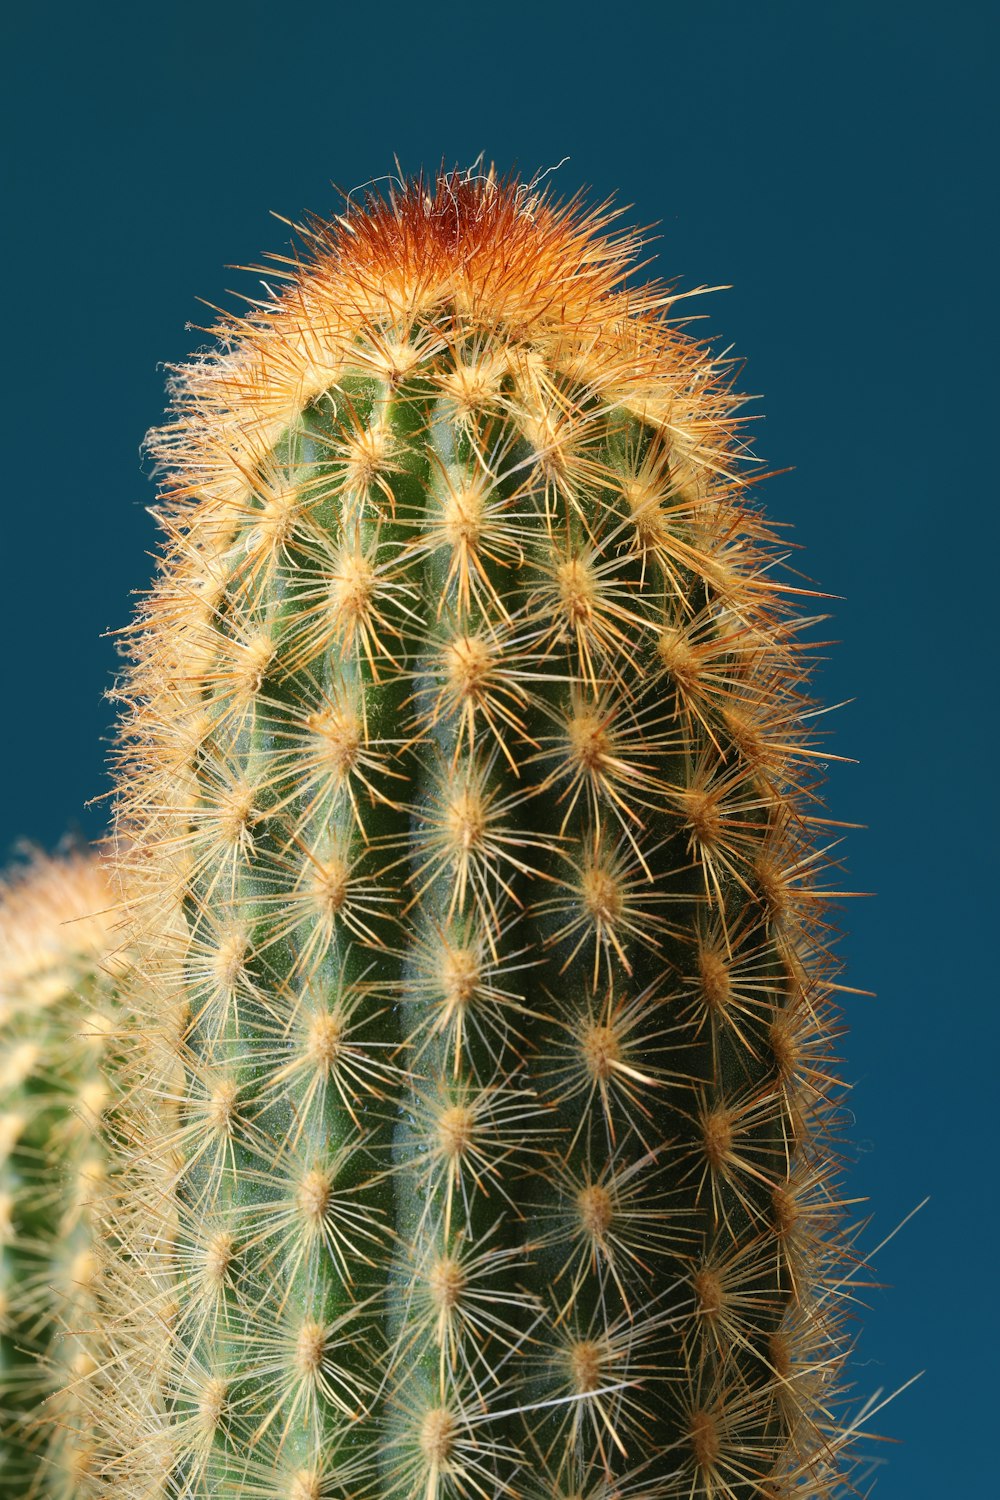 a close up of a cactus against a blue sky